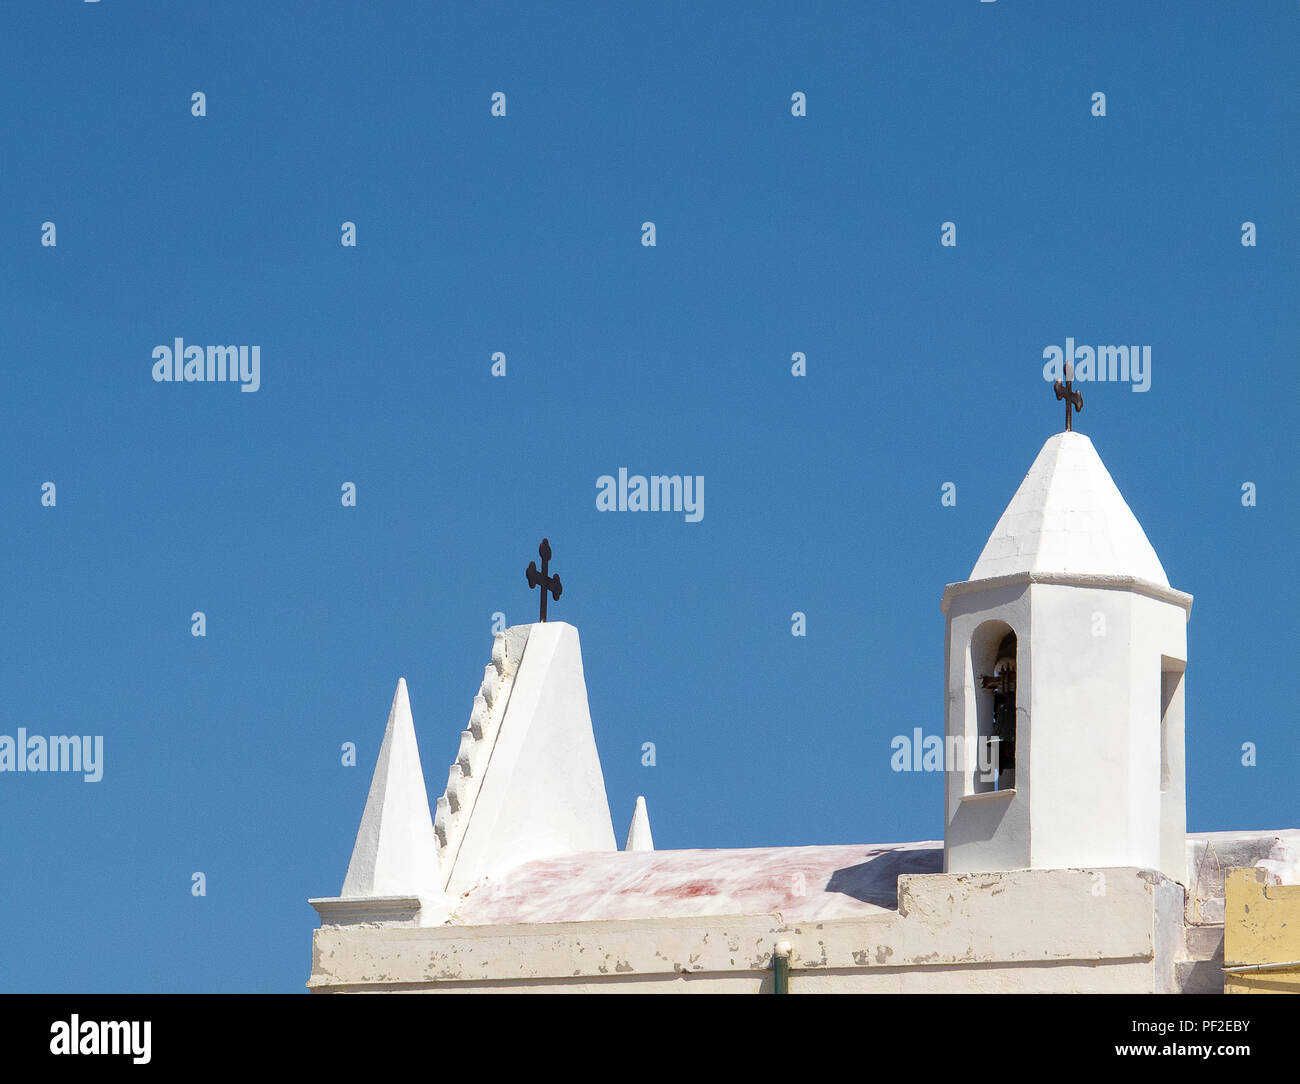 Calabria (Italia): techo y campanario de una pequeña iglesia blanca, con el azul del cielo despejado en el fondo, en un día soleado de verano Foto de stock